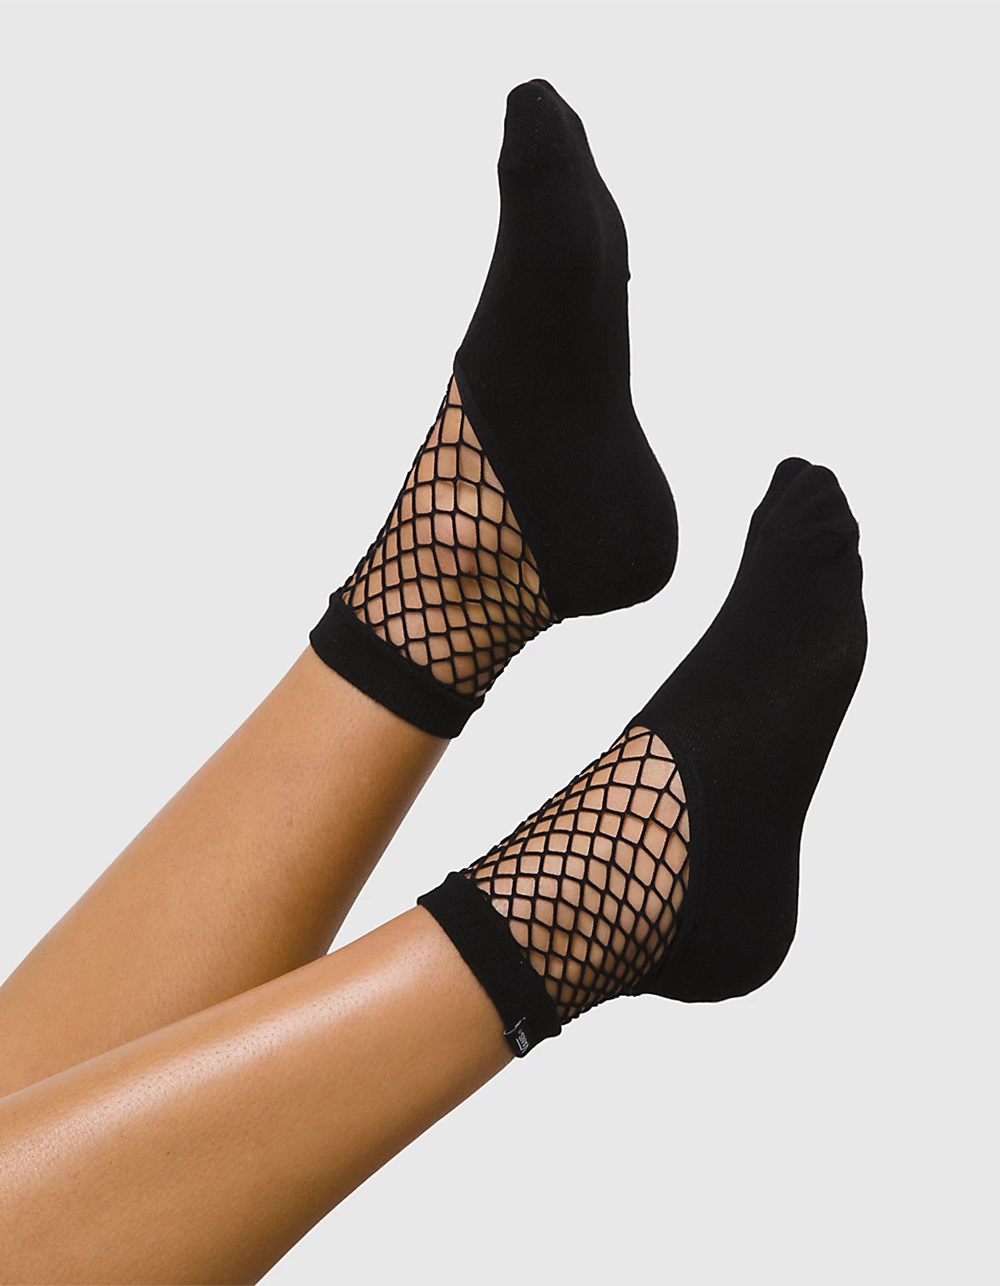 Fishnet Socks, Black Medium Mesh Fishnet Socks